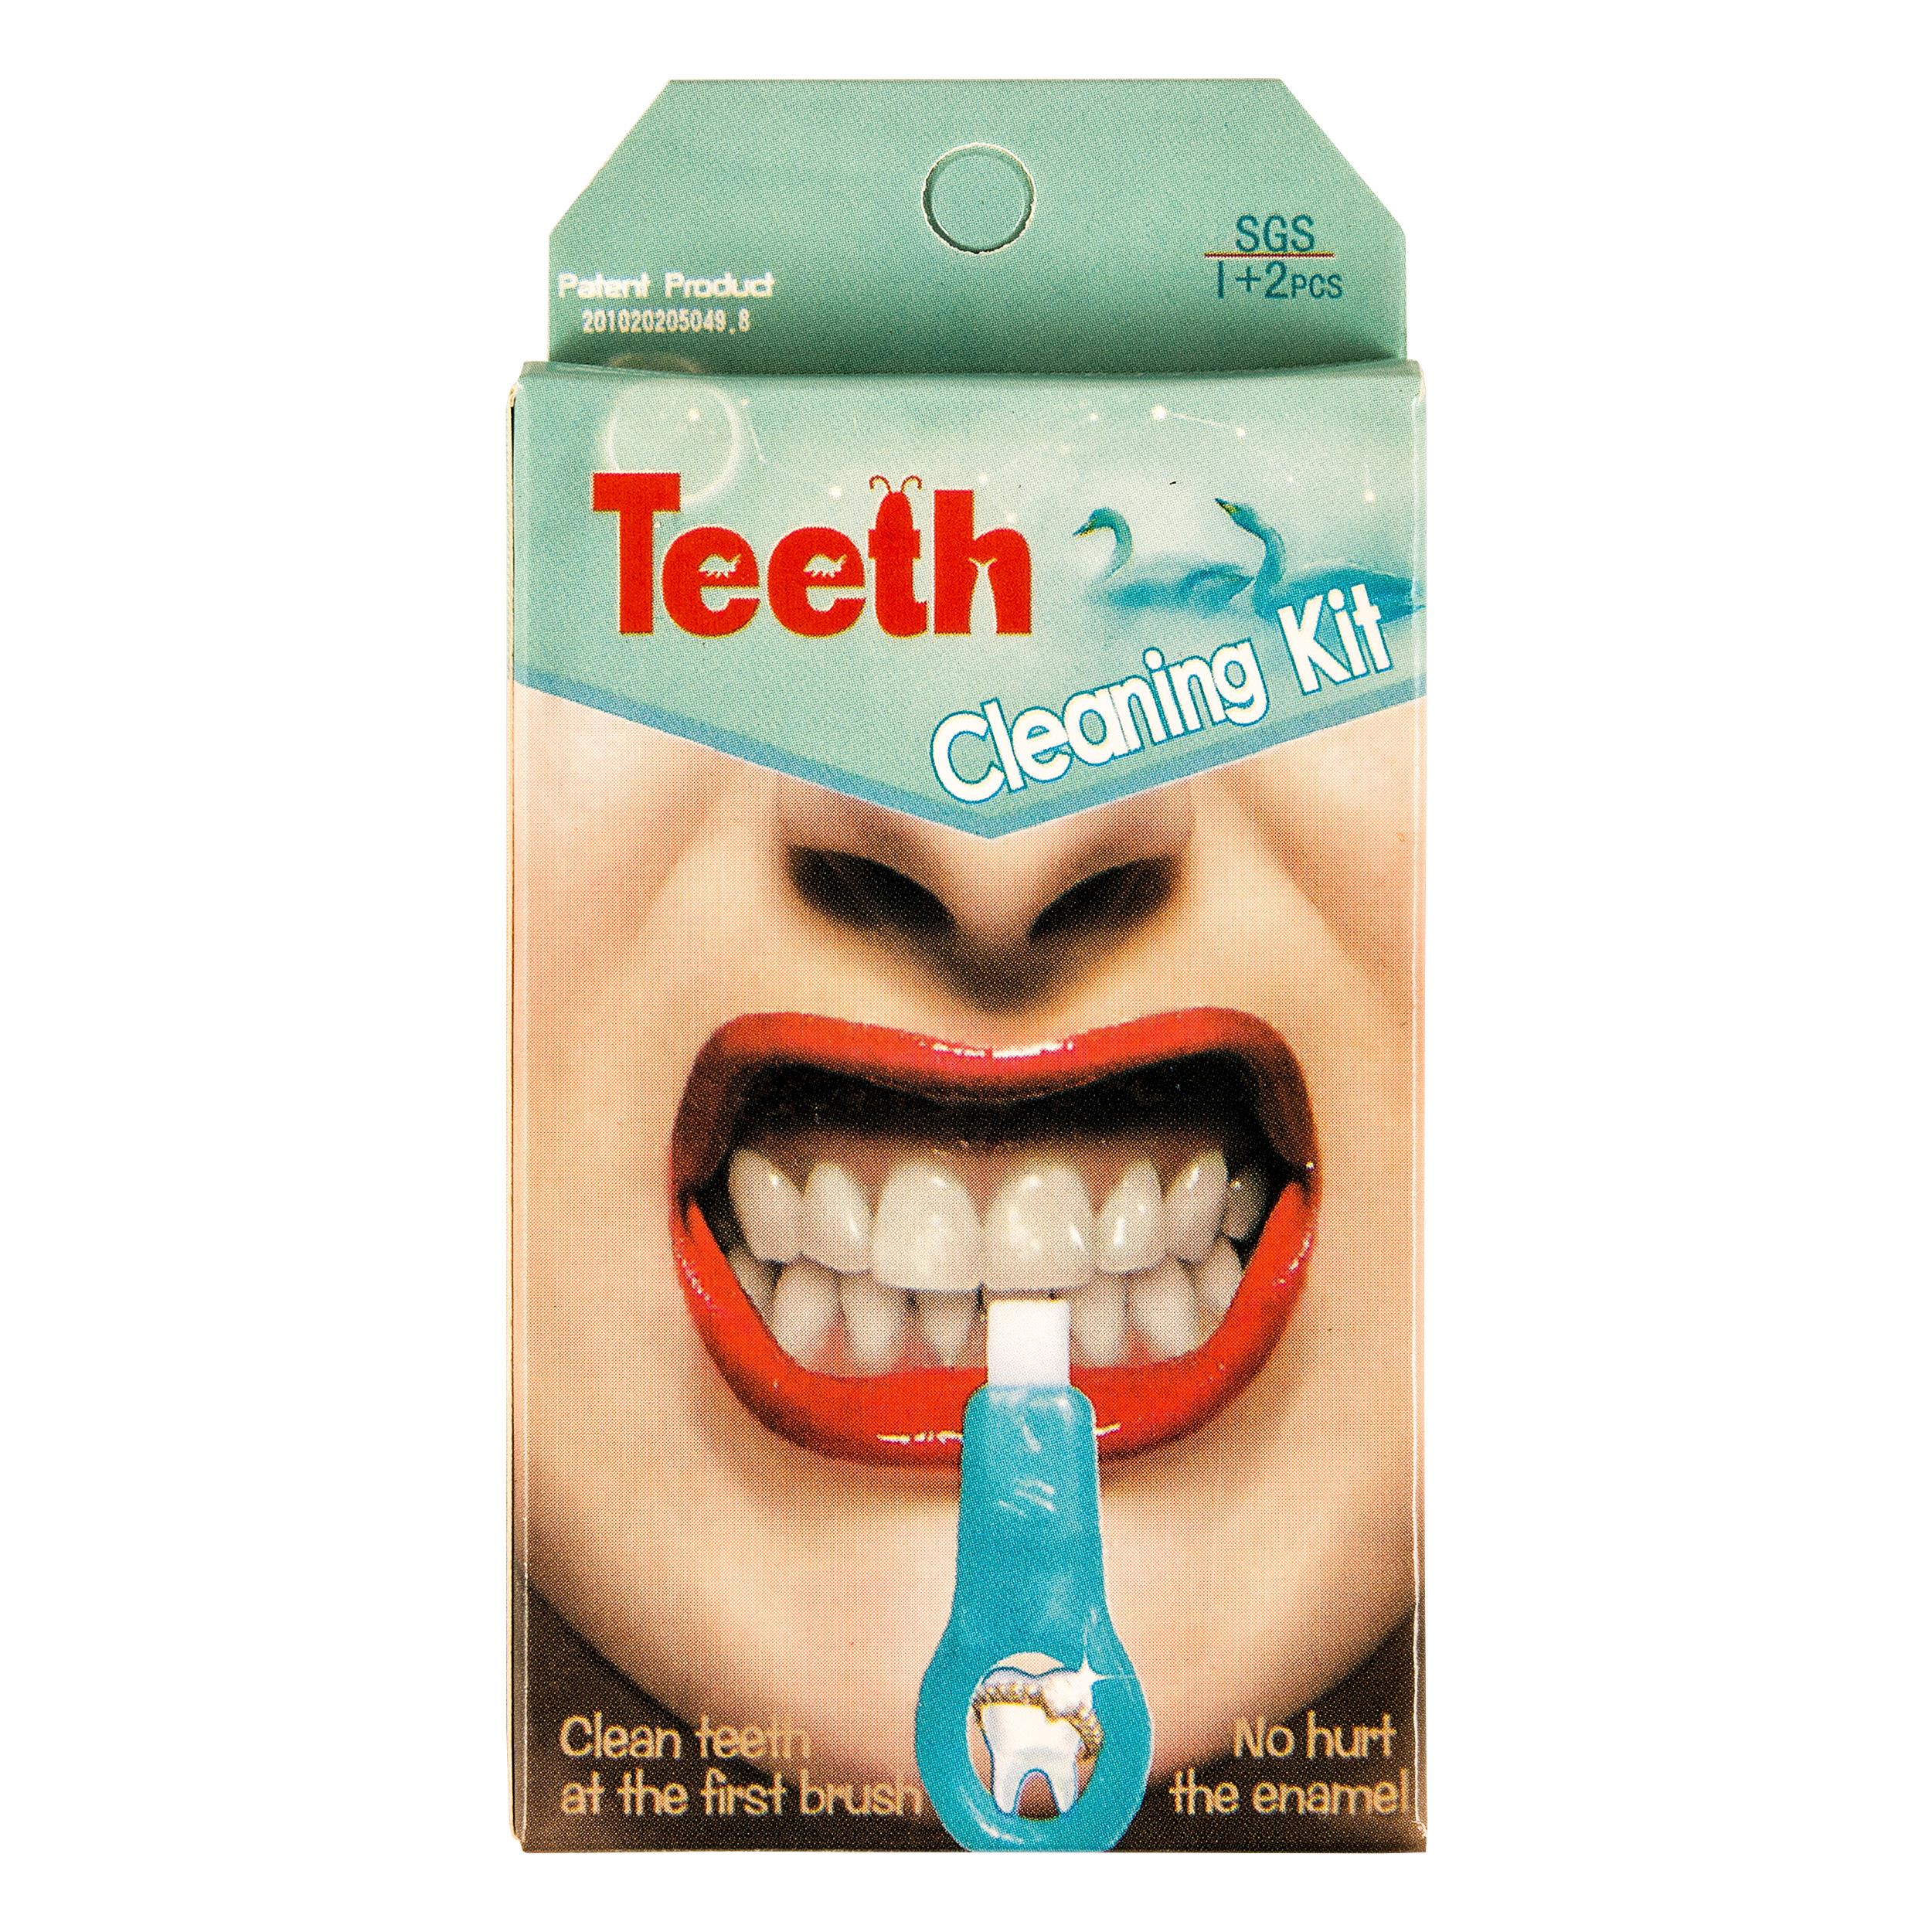 Teeth Cleaning Kit. Карандаш для отбеливания зубов белый. Очень чувствительные зубы. Отбеливание зубов в домашних условиях. Отбеливание зубов маслами